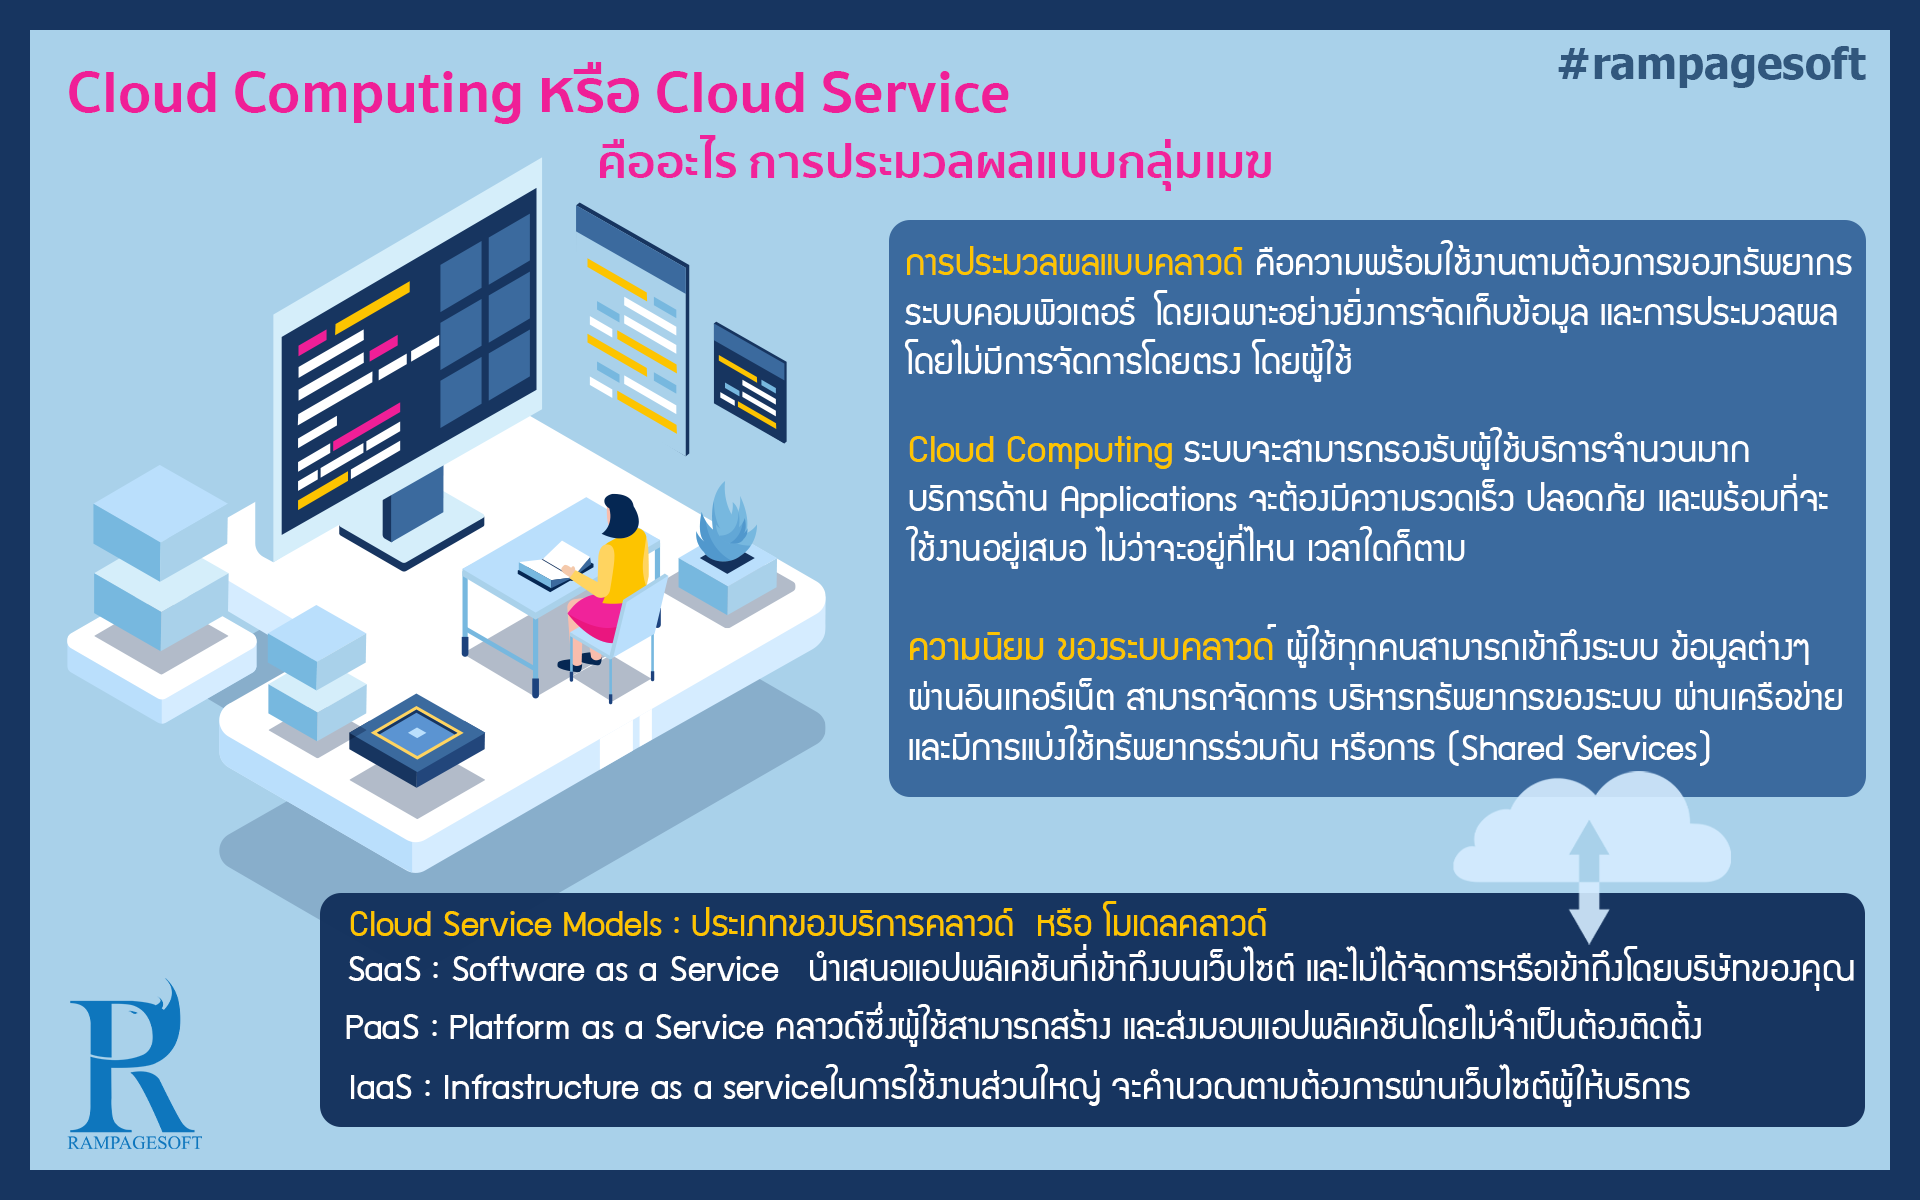 Cloud Computing Or Cloud Service บทความ ข่าวสาร rampagesoft